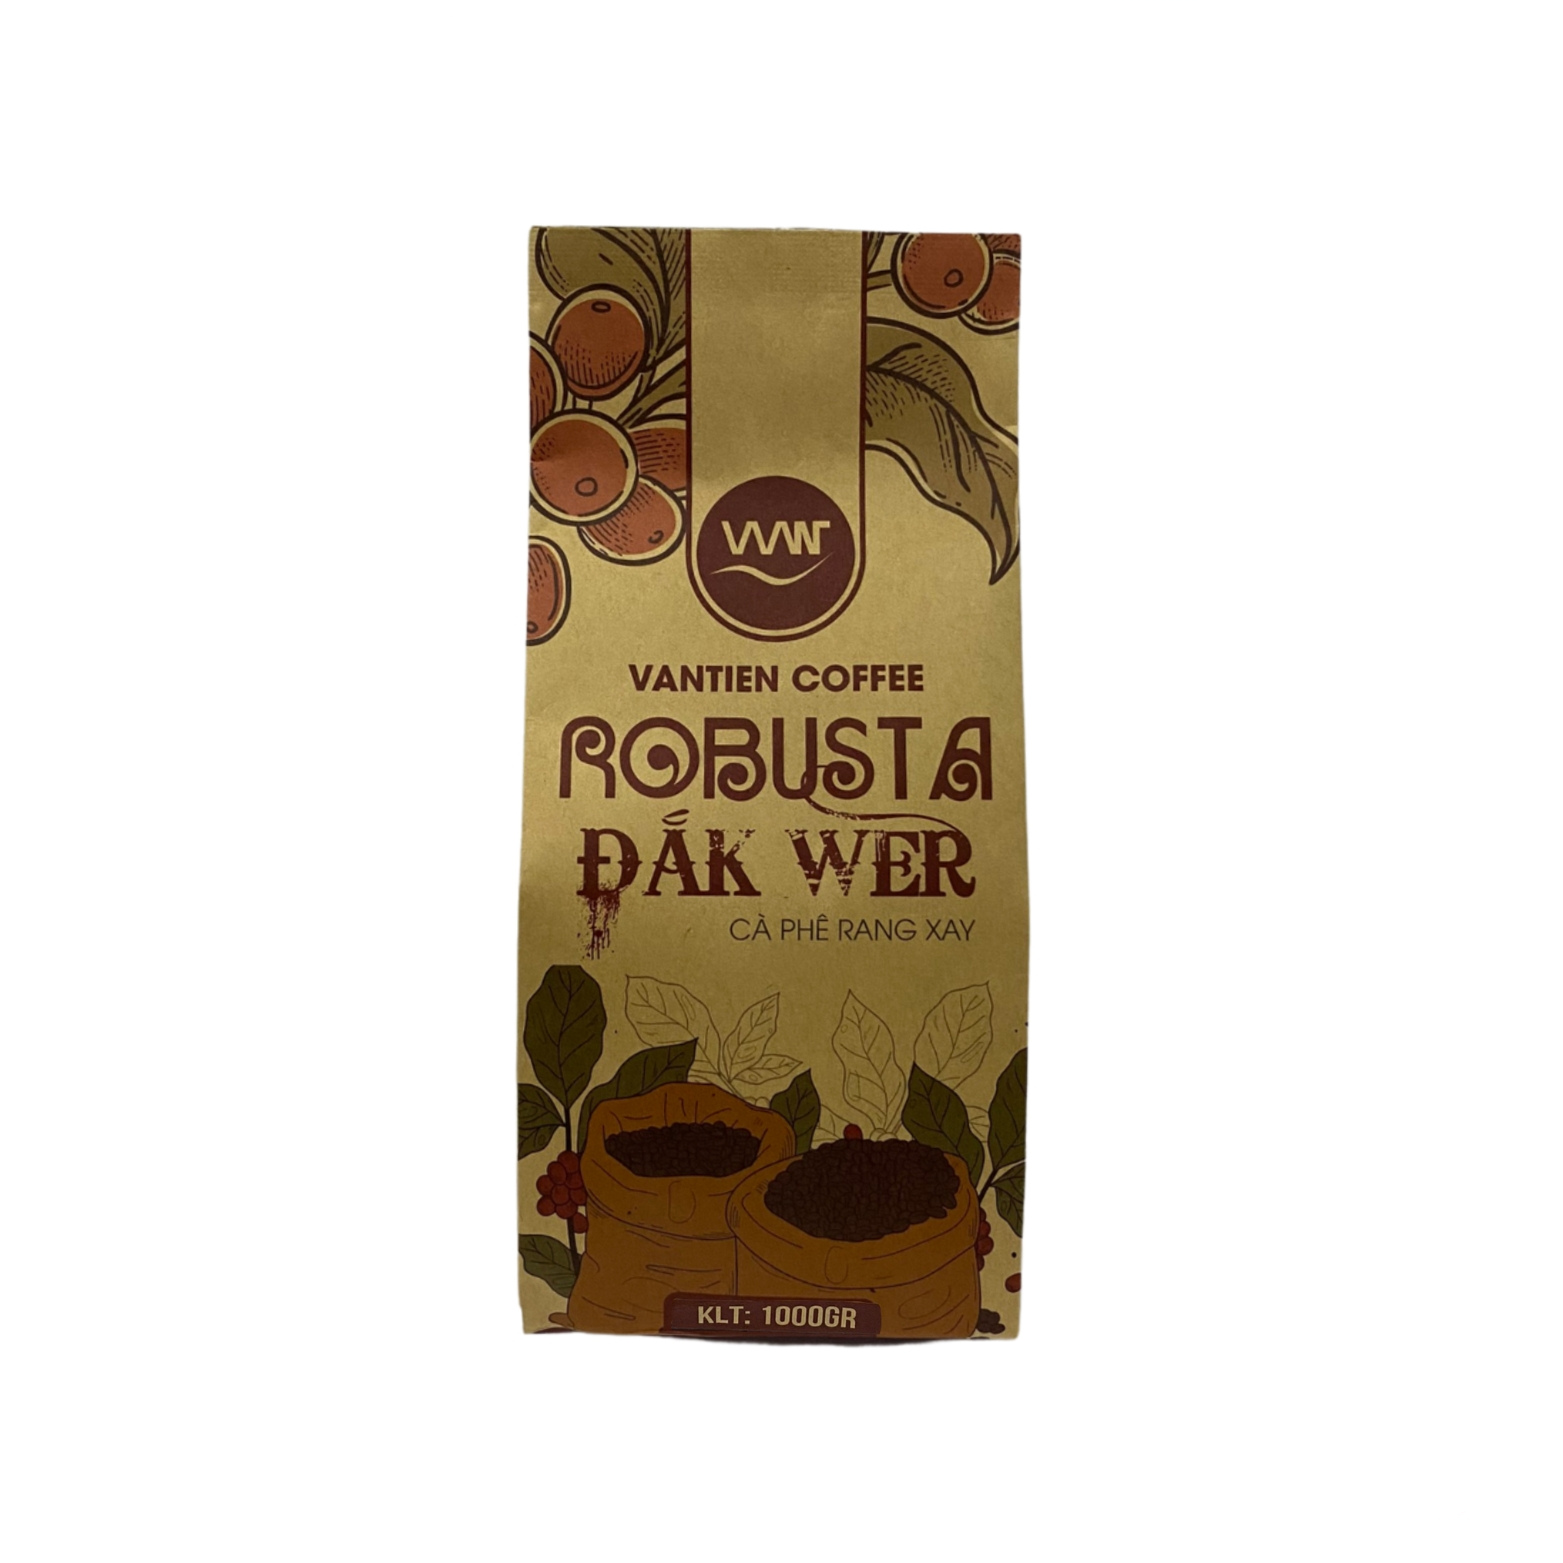 Mua 1 Tặng 1 - Cà Phê rang xay Robusta Đắk Wer Vantien Coffee gồm túi 1kg và gói 200g